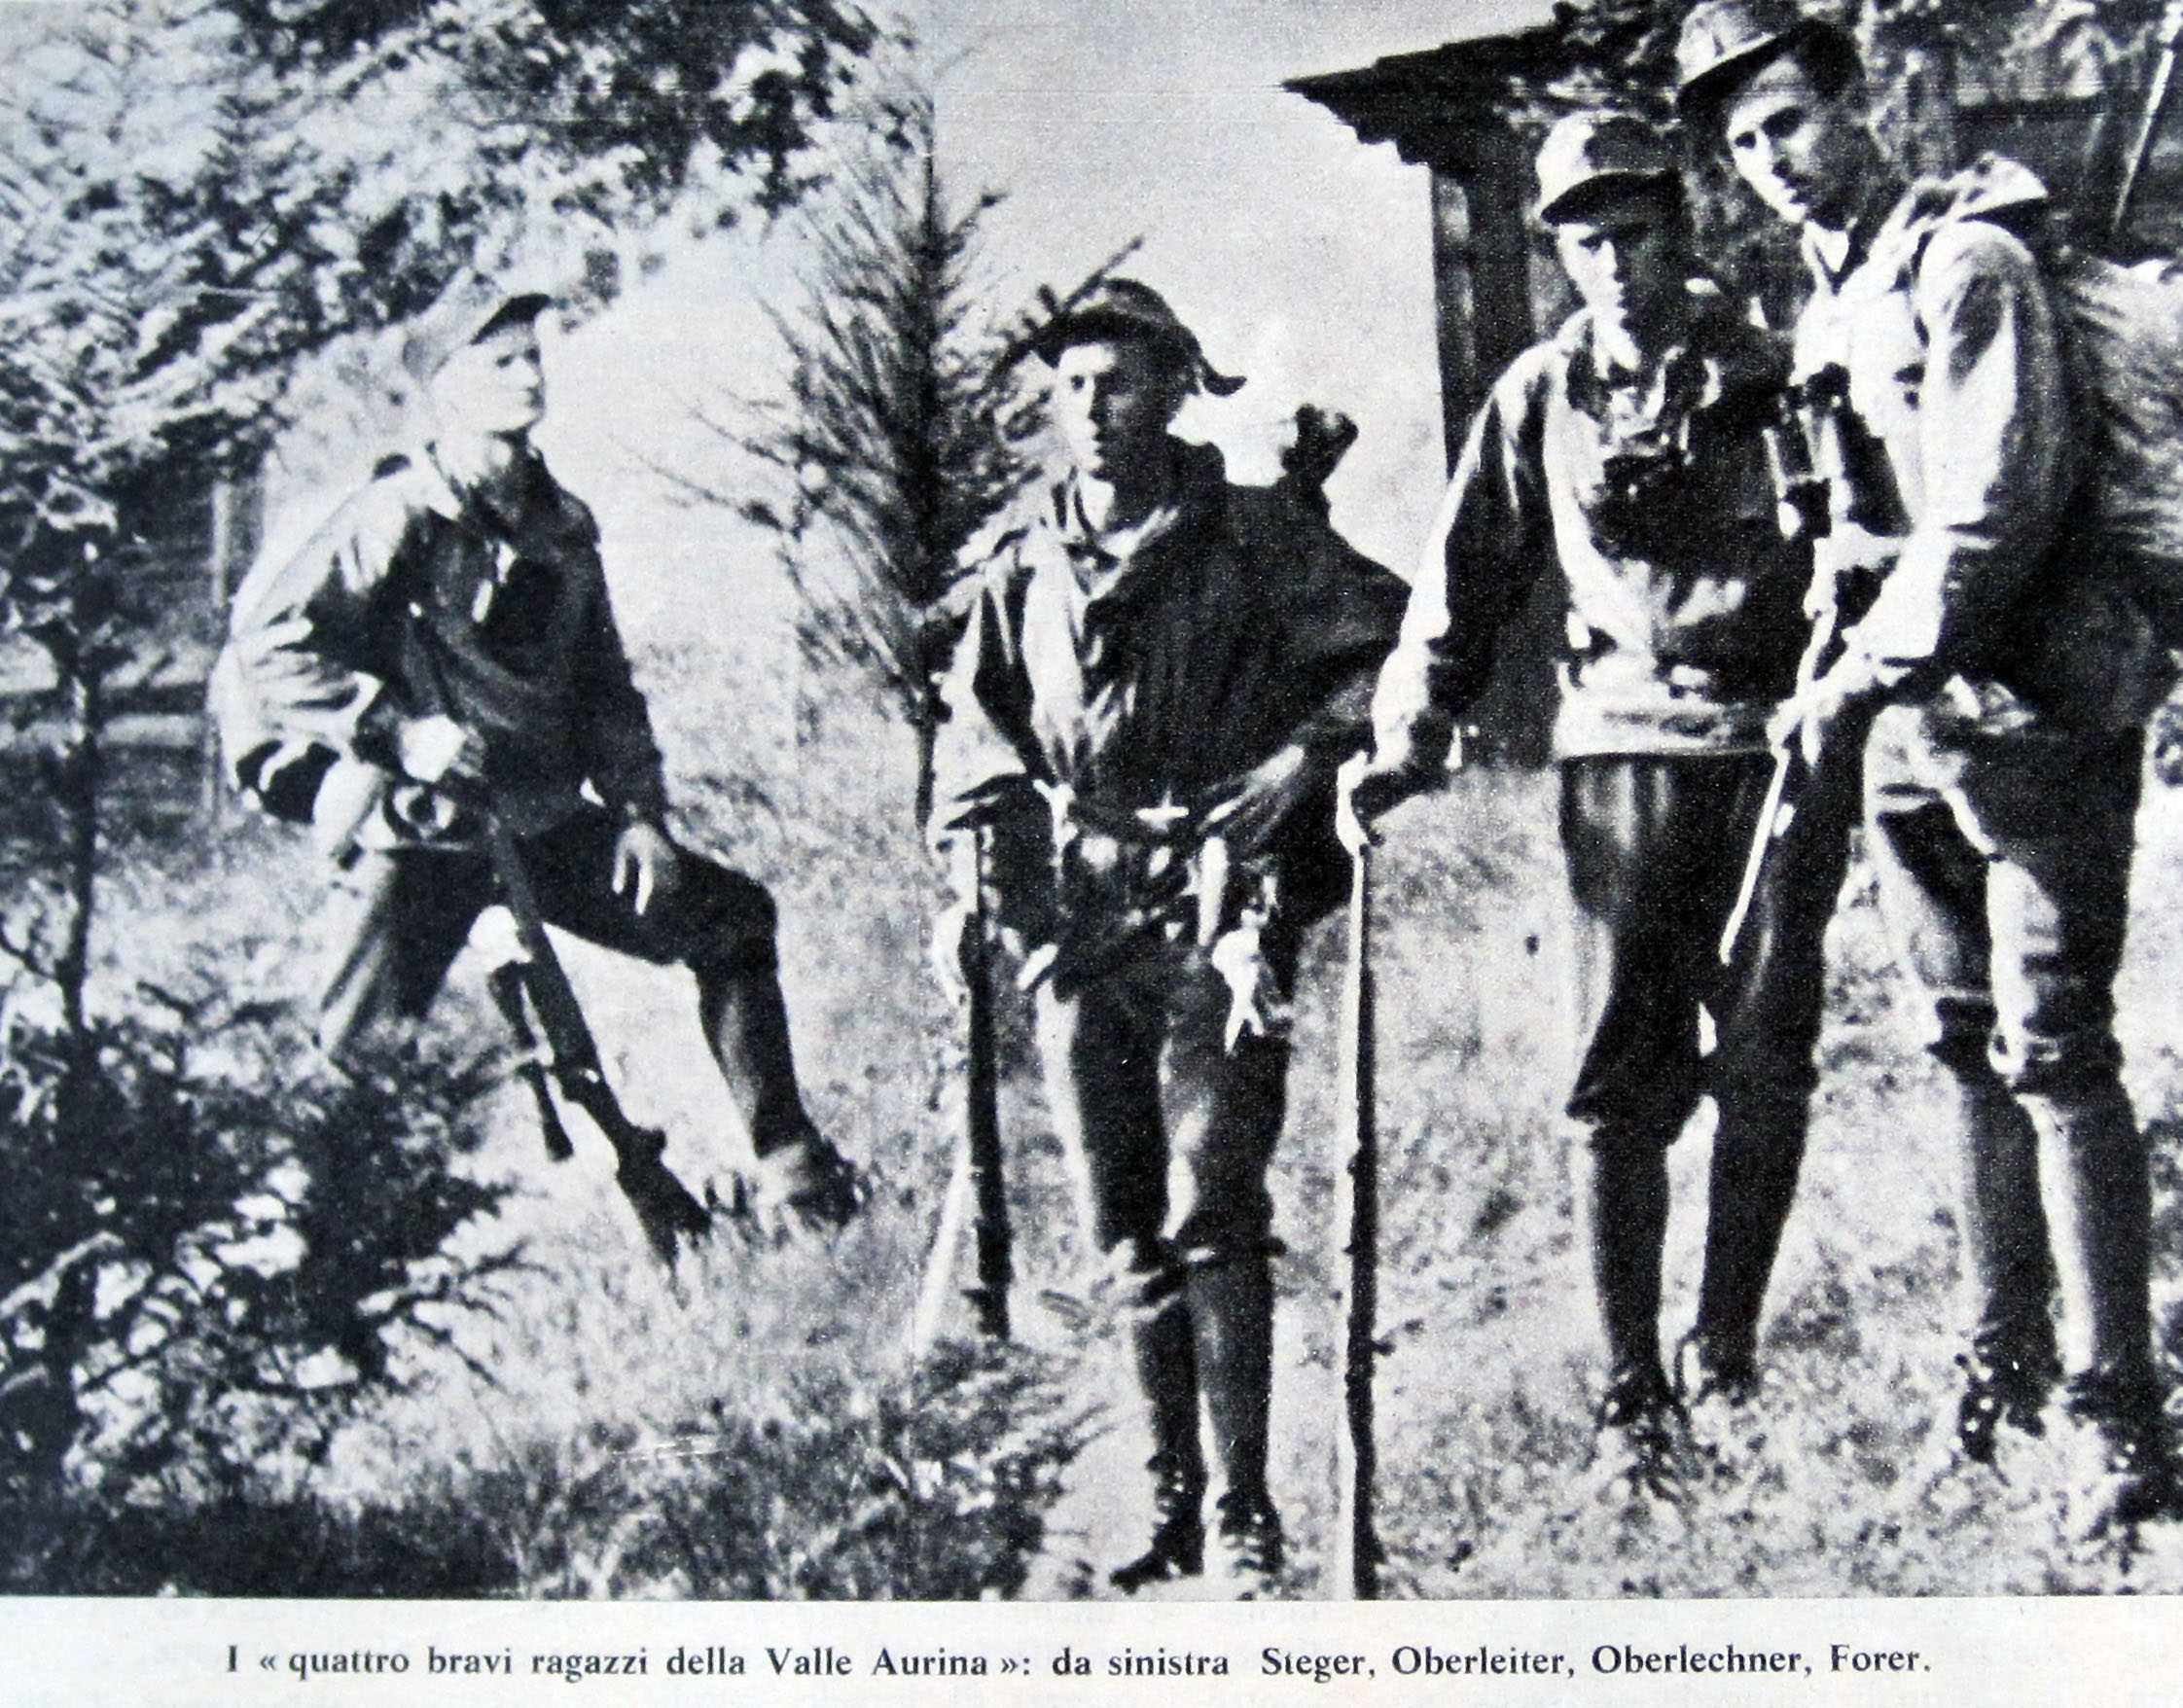 Bild der „Pusterer“ aus „Domenica del Corriere“ vom 11. Juli 1967. Heinrich Oberleiter ist der Zweite von links.